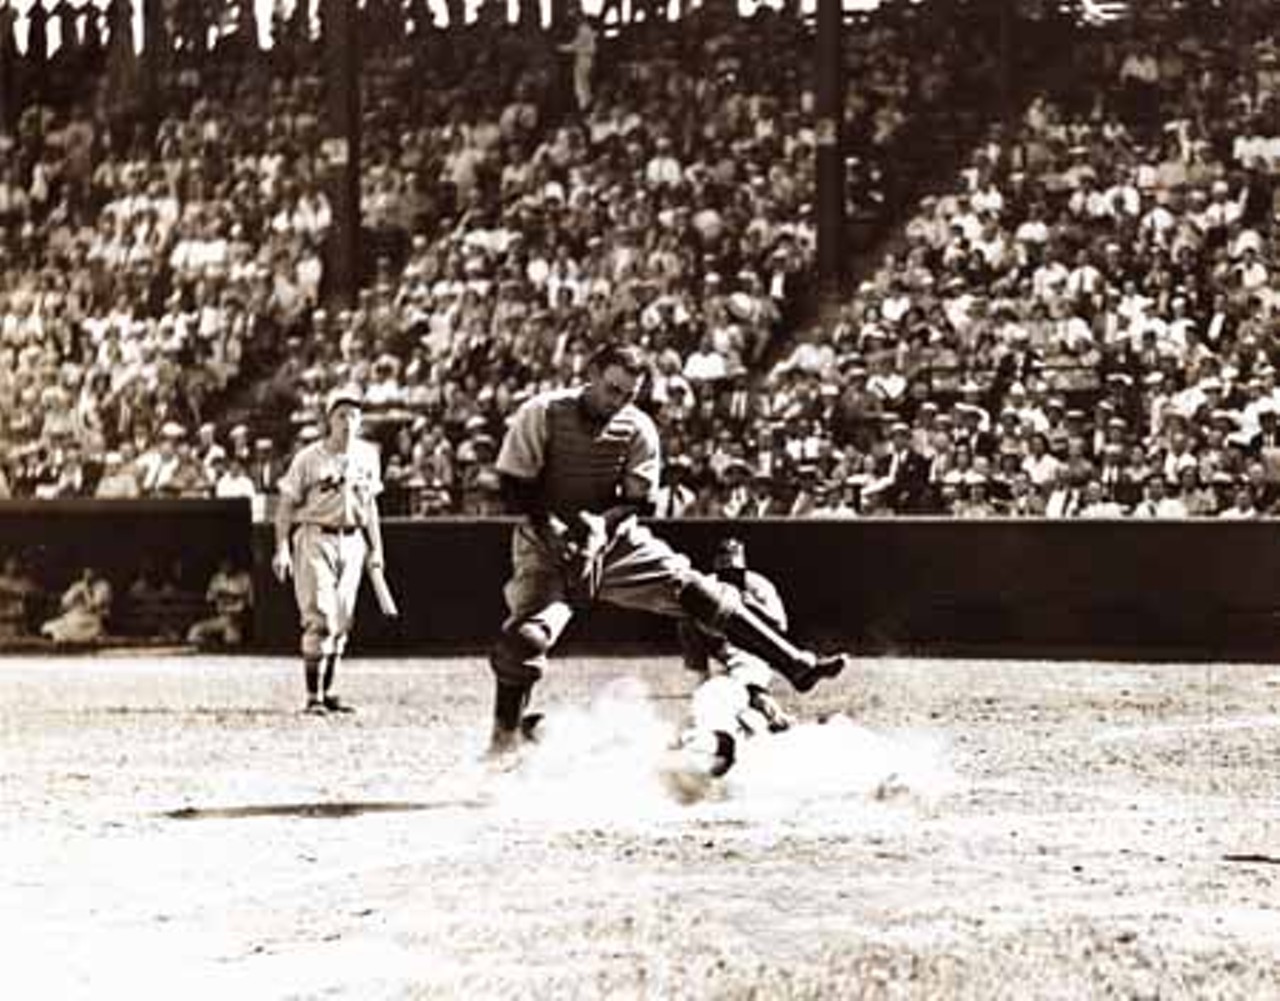 1937. St. Louis Cardinals vs. Philadelphia Phillies. Stuart Martin slides home under Earl Grace, the Phillies catcher.